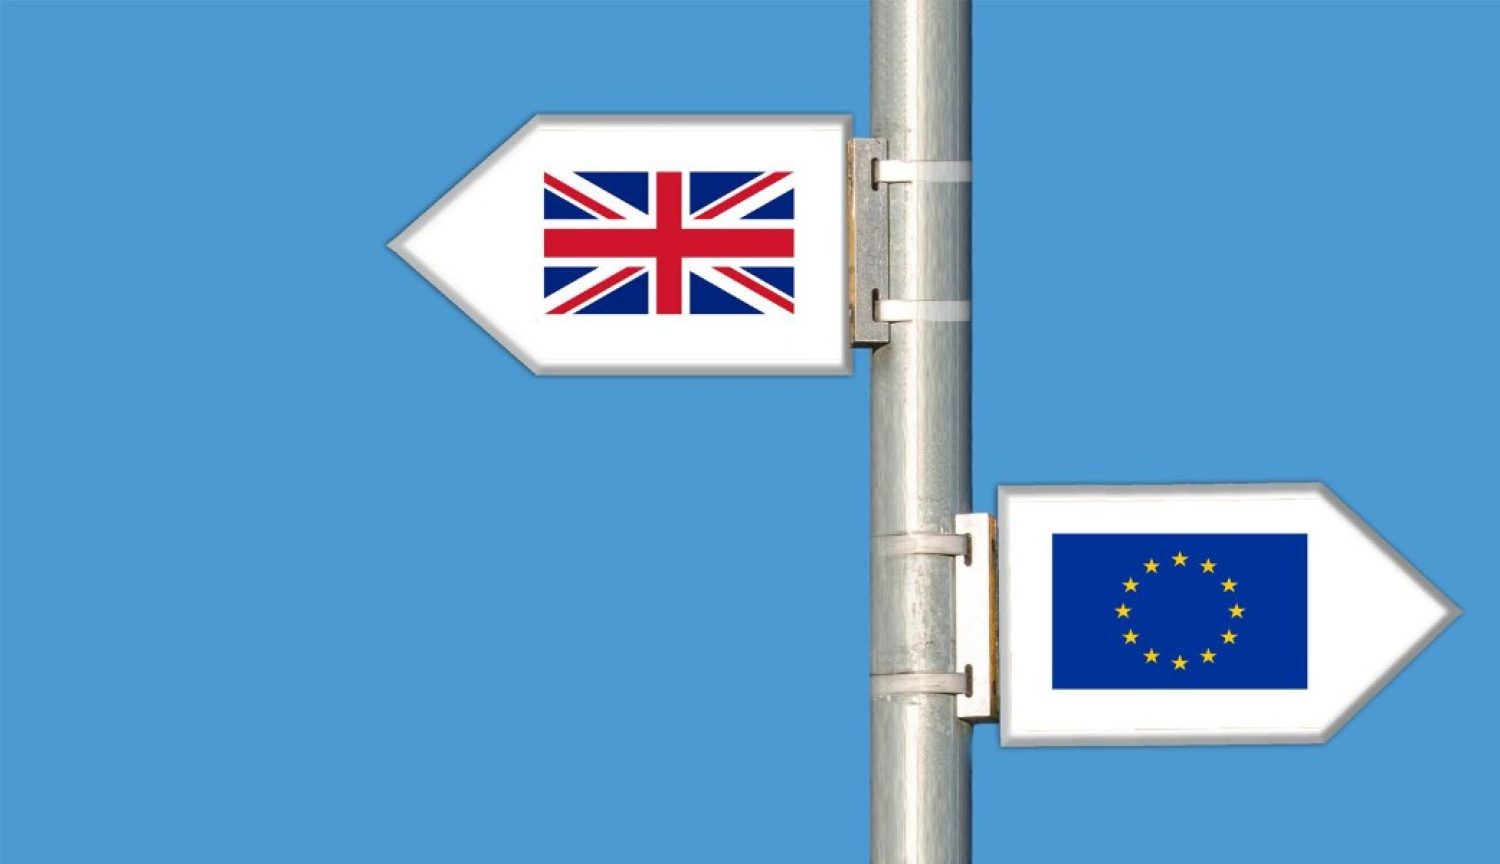 UK and EU flags